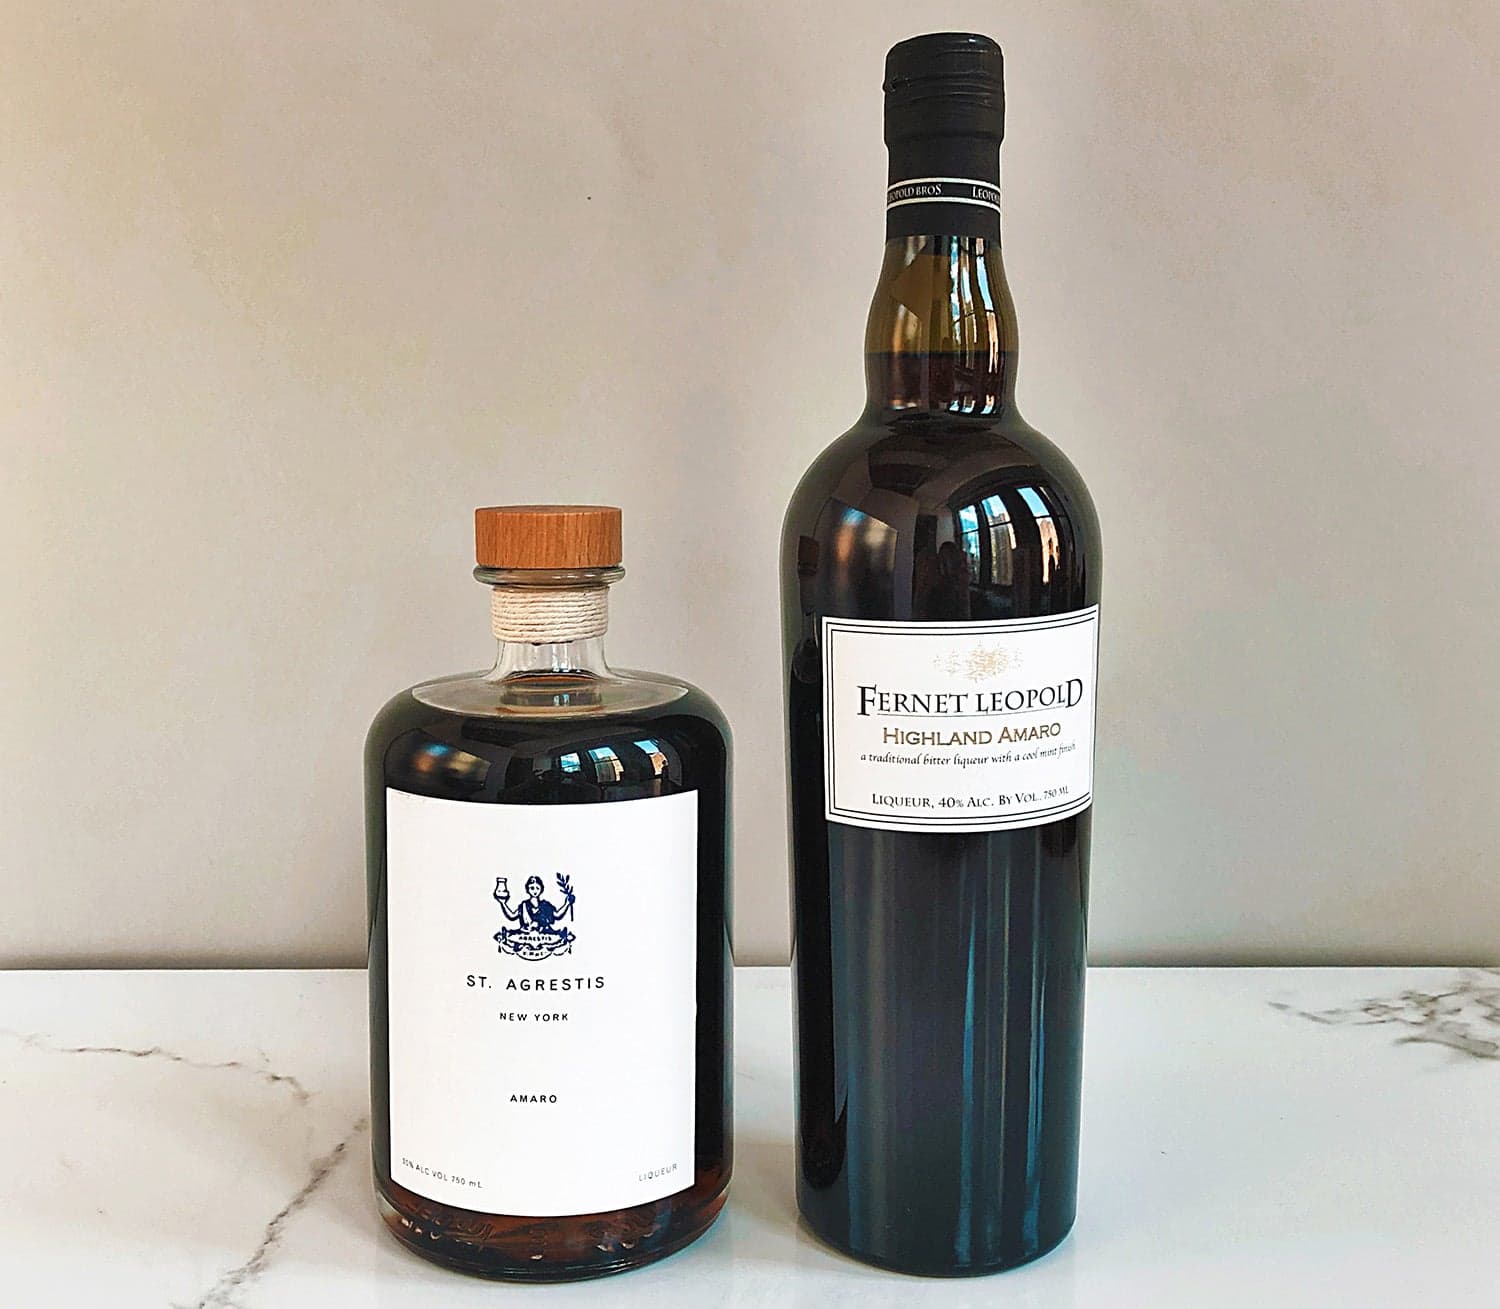 Fernet Leopold and St. Agrestis Amaro